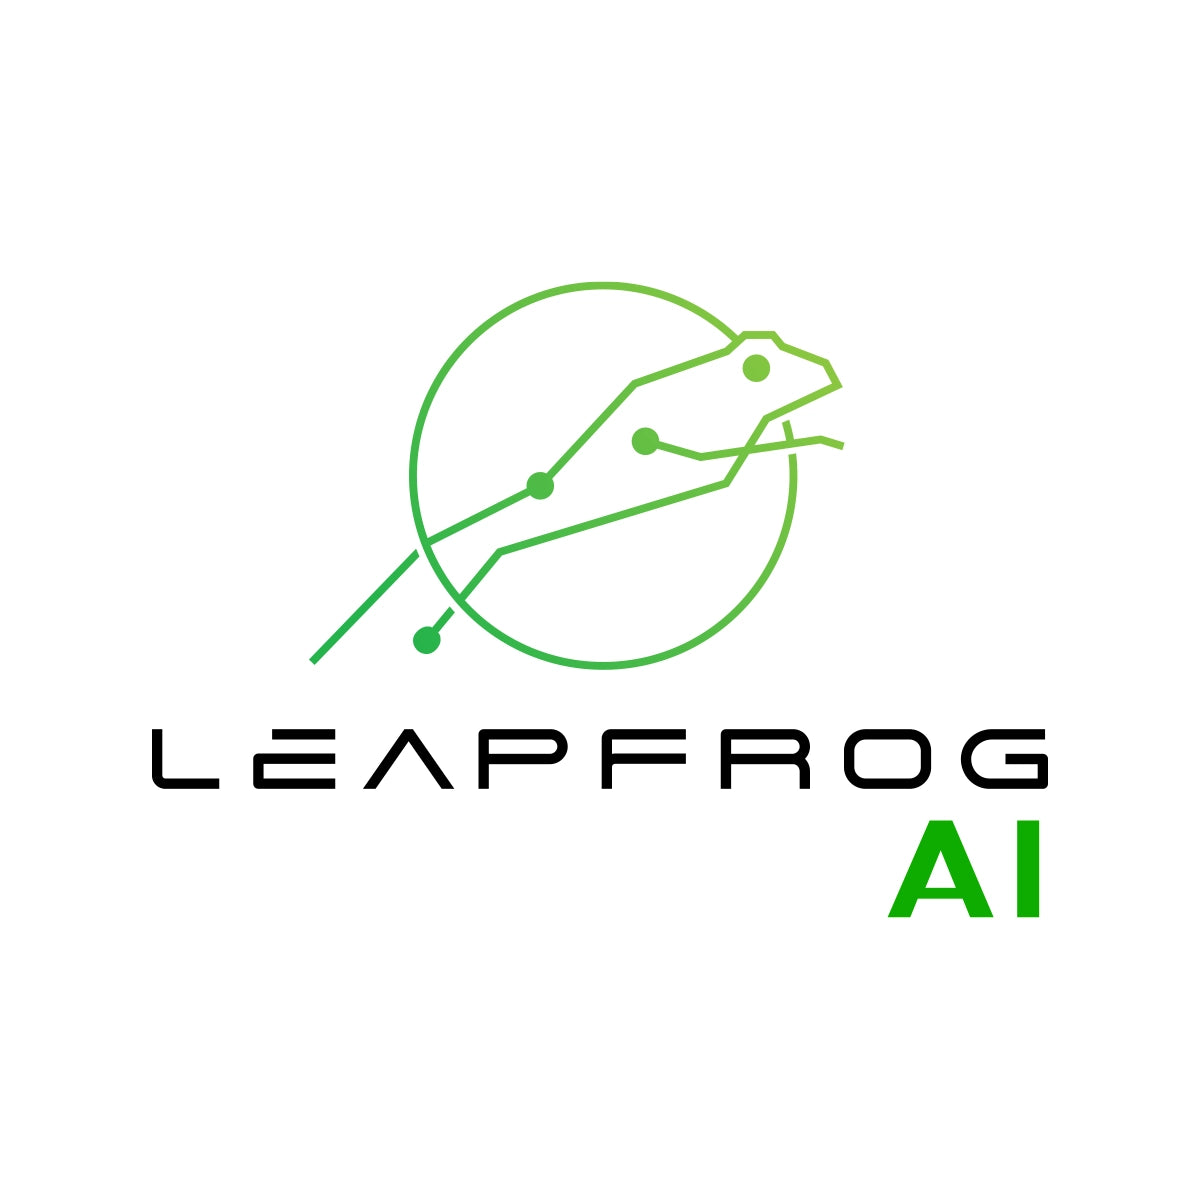 LeapfrogAI.com